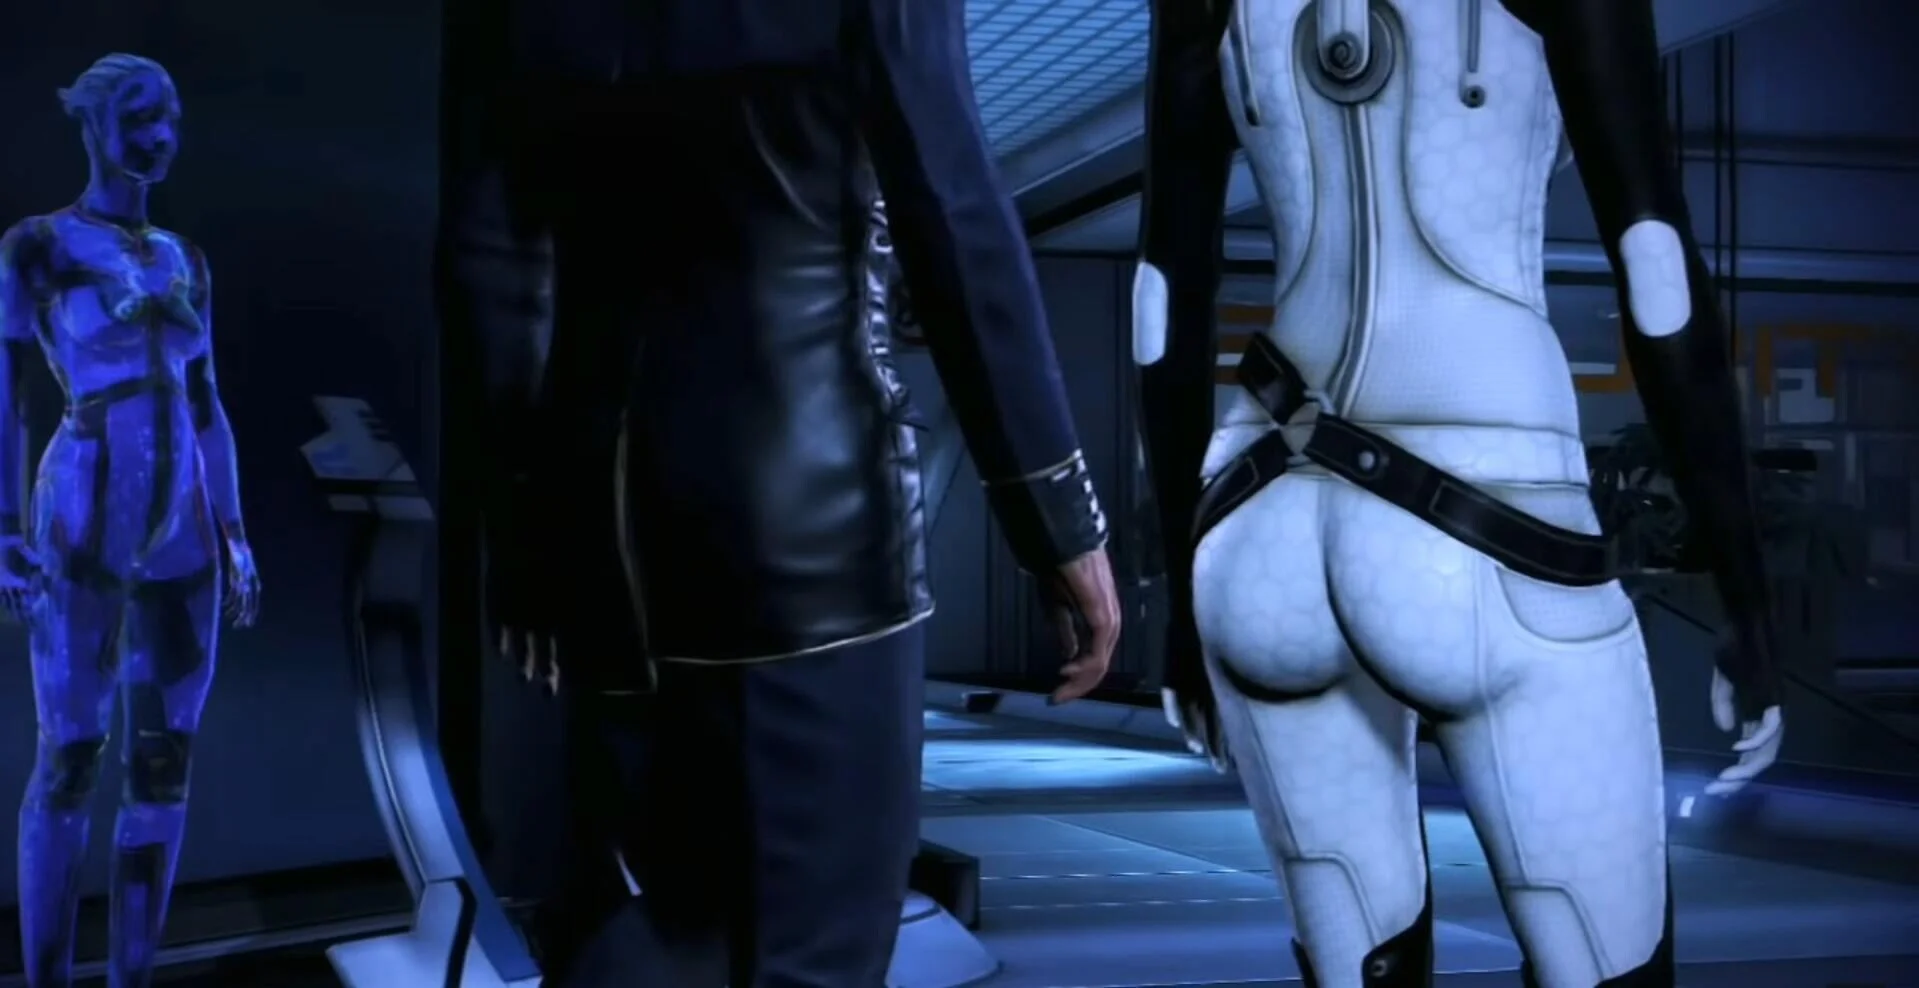 СМИ провели расследование о сценах с попой Миранды в Mass Effect Legendary Edition - фото 9